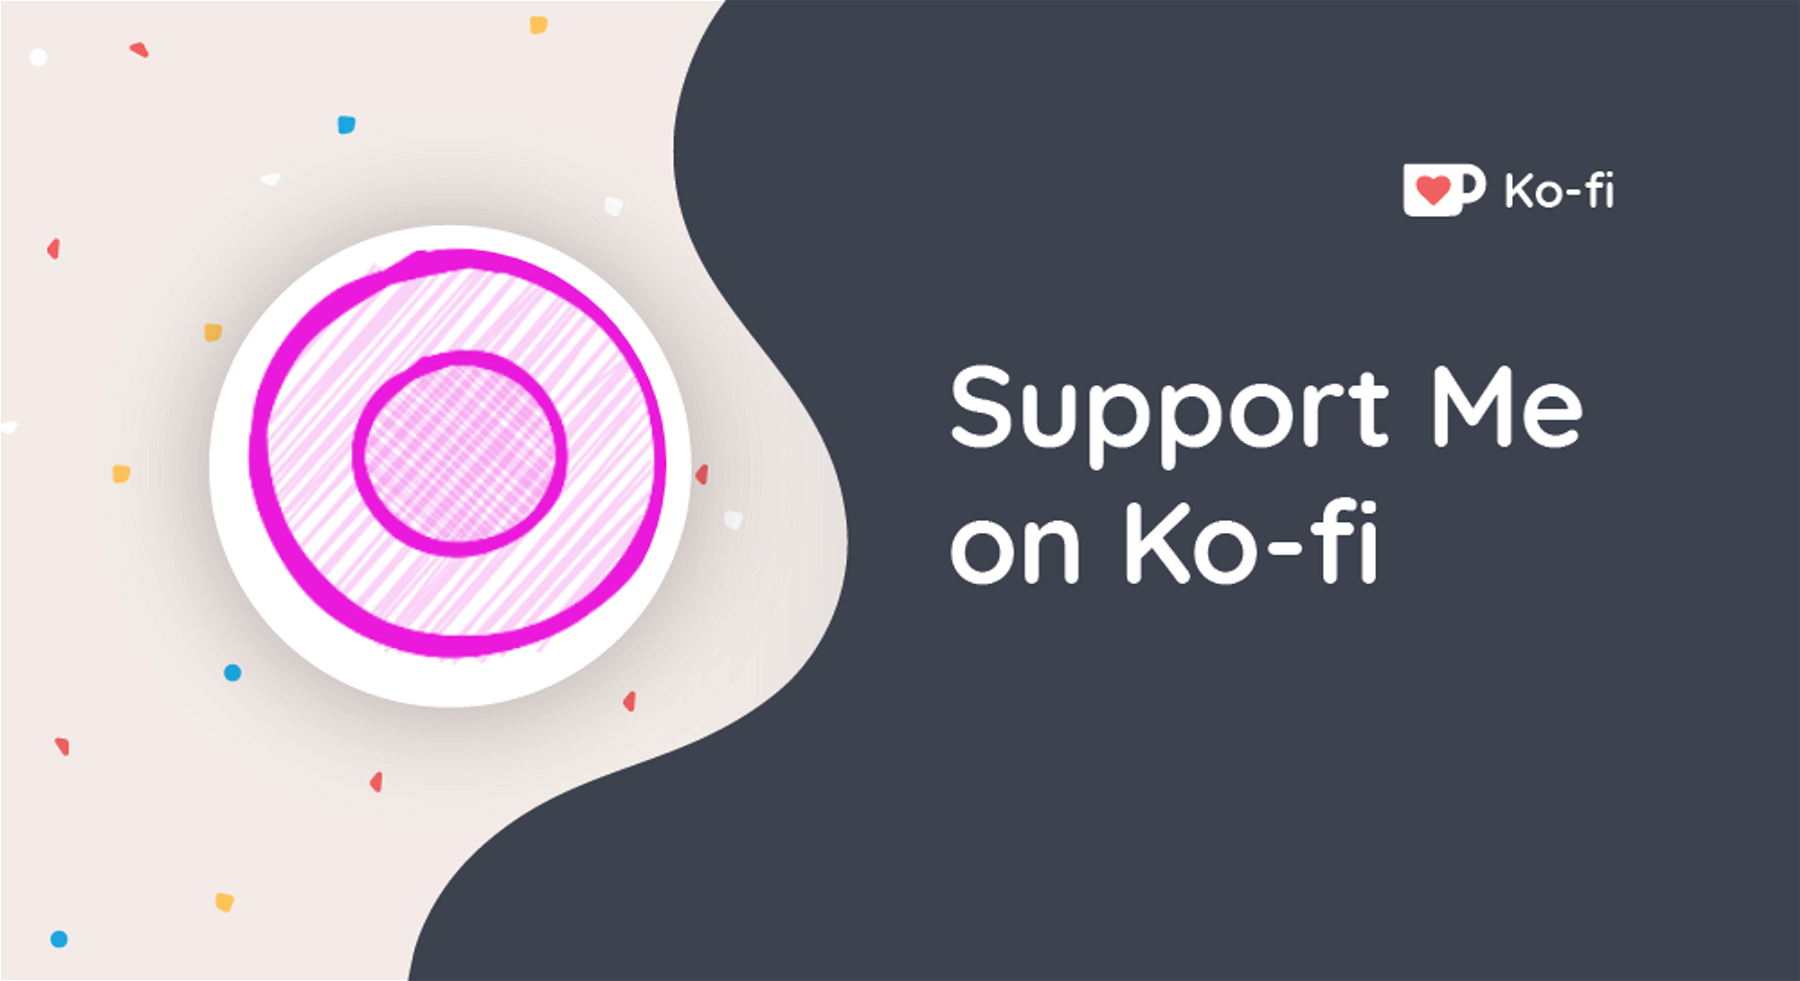 Support ajohnguerra on Ko-fi! â�¤ï¸�. ko-fi.com/ajohnguerra